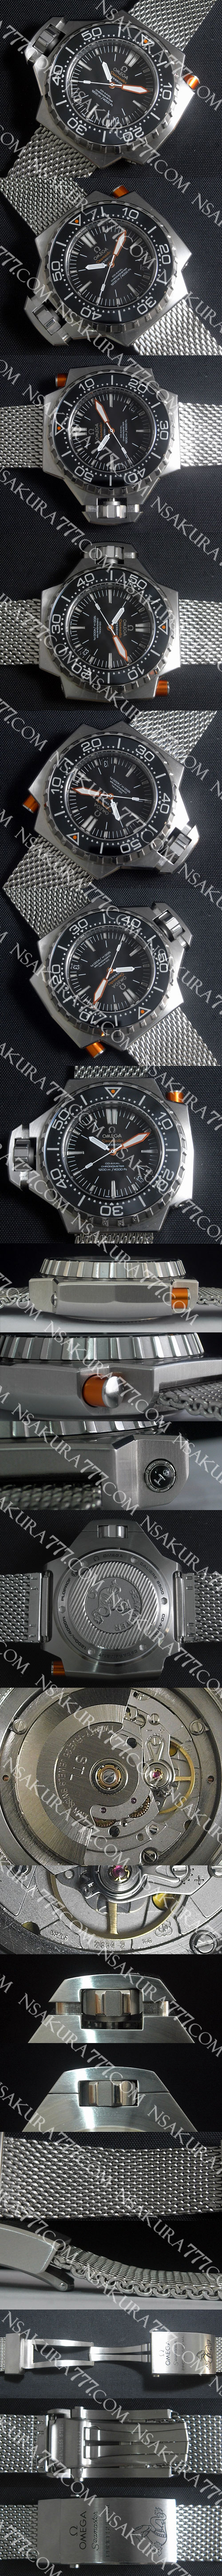 スーパーコピー時計オメガ シーマスター プロフェッショナル 1200 Swiss ETA社 2834-2 - ウインドウを閉じる